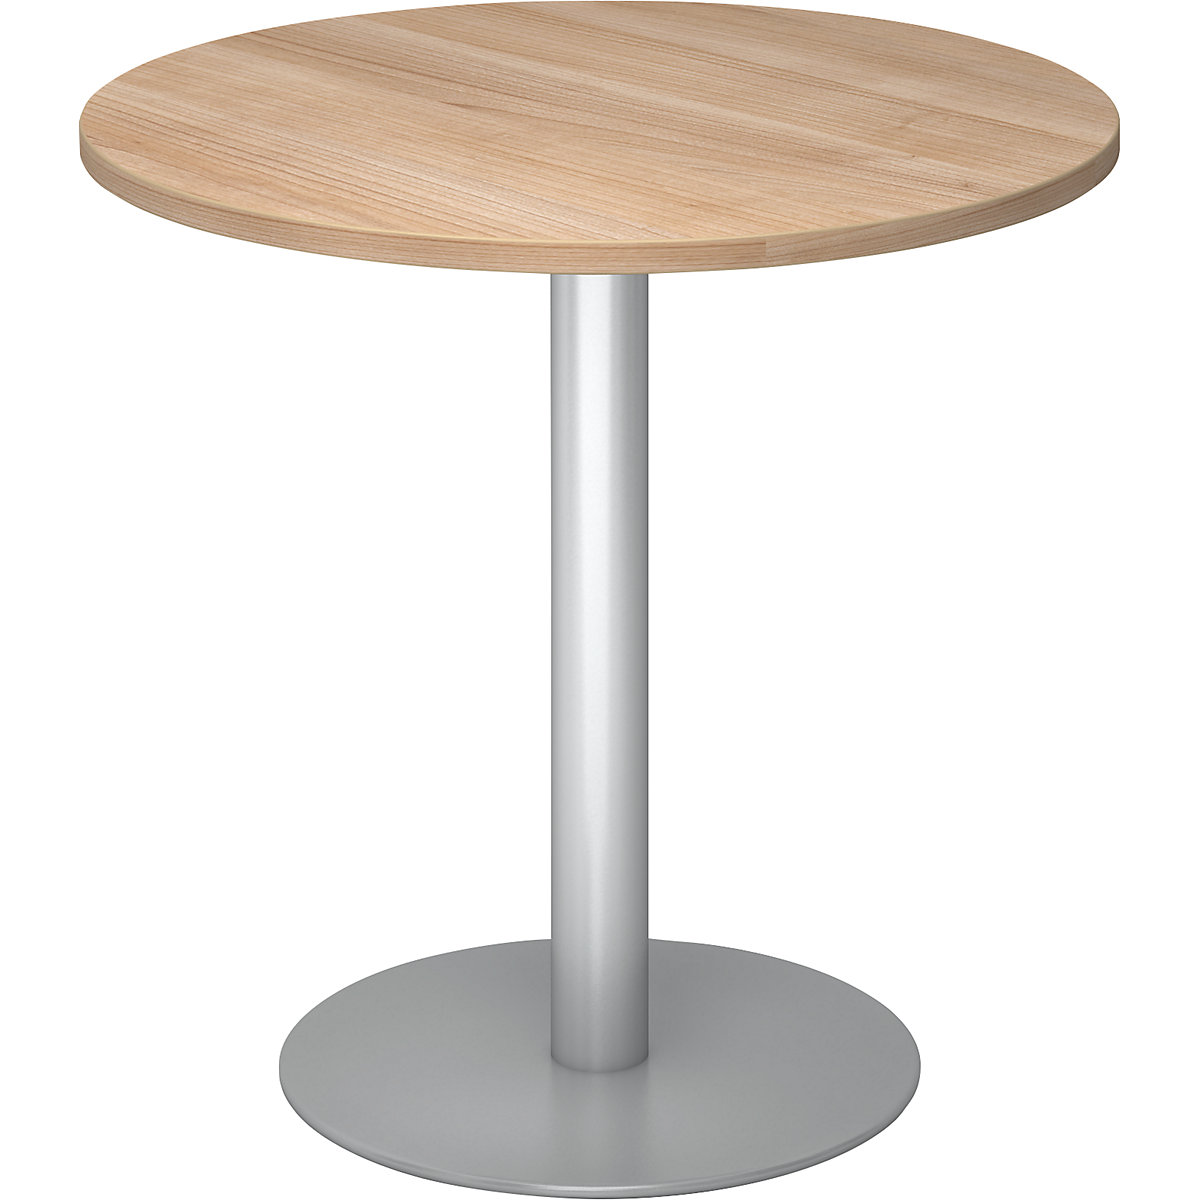 Tárgyalóasztal, Ø 800 mm, 755 mm magas, ezüst váz, mogyoró-dekor asztallap